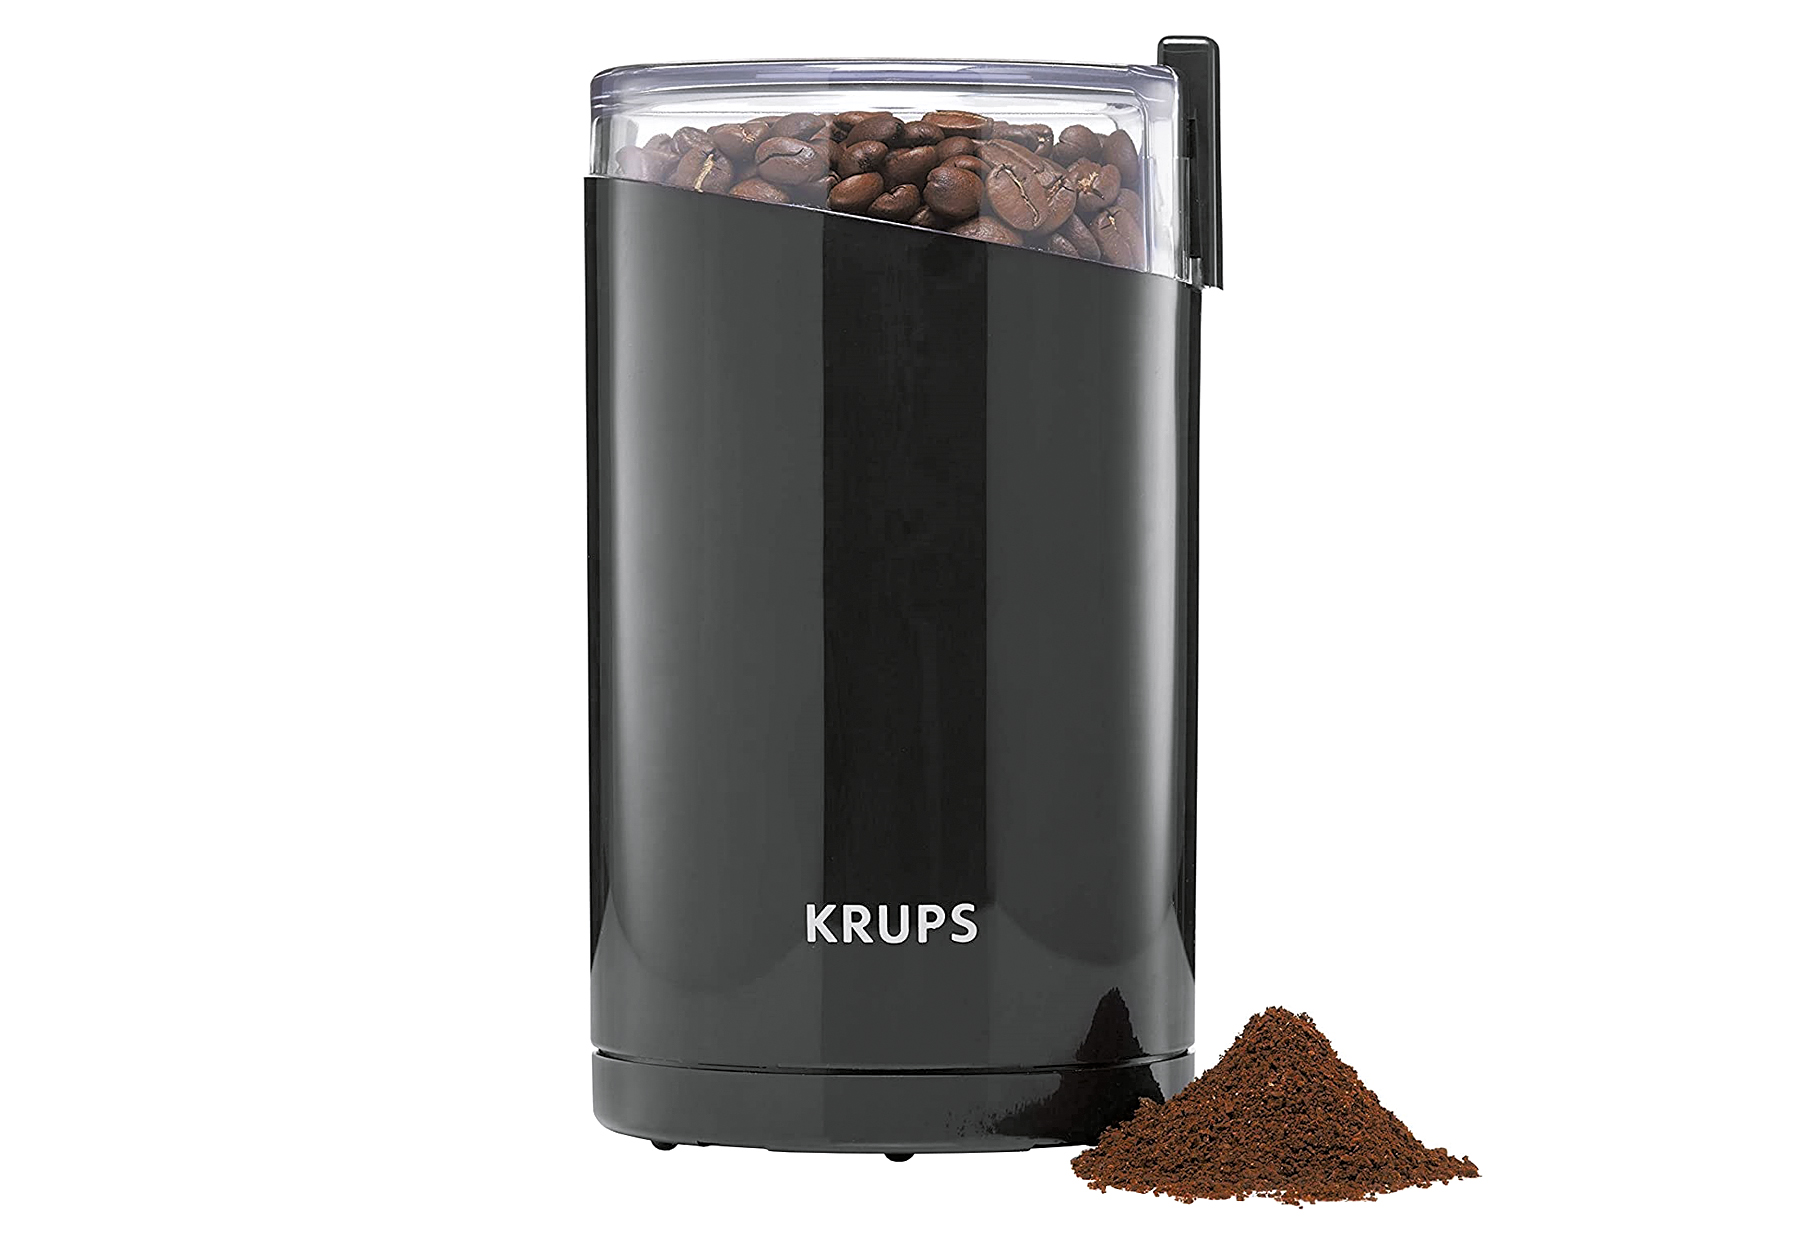 KRUPS Kaffee- und Gewürzmühle F2034210 schwarz